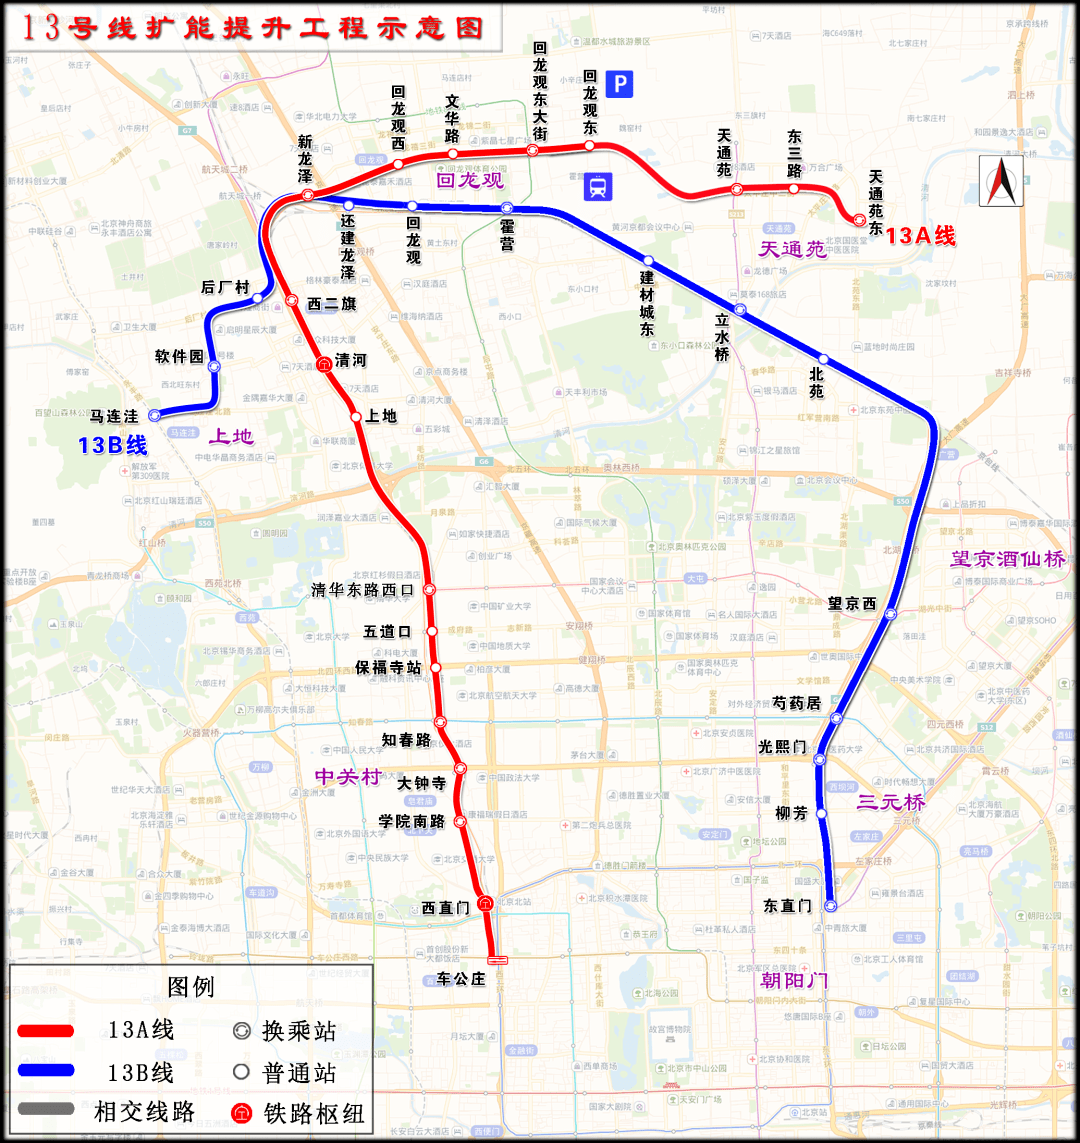 北京地铁华为手机号
:复工！北京地铁13号线拆分为A、B线，提升运输能力